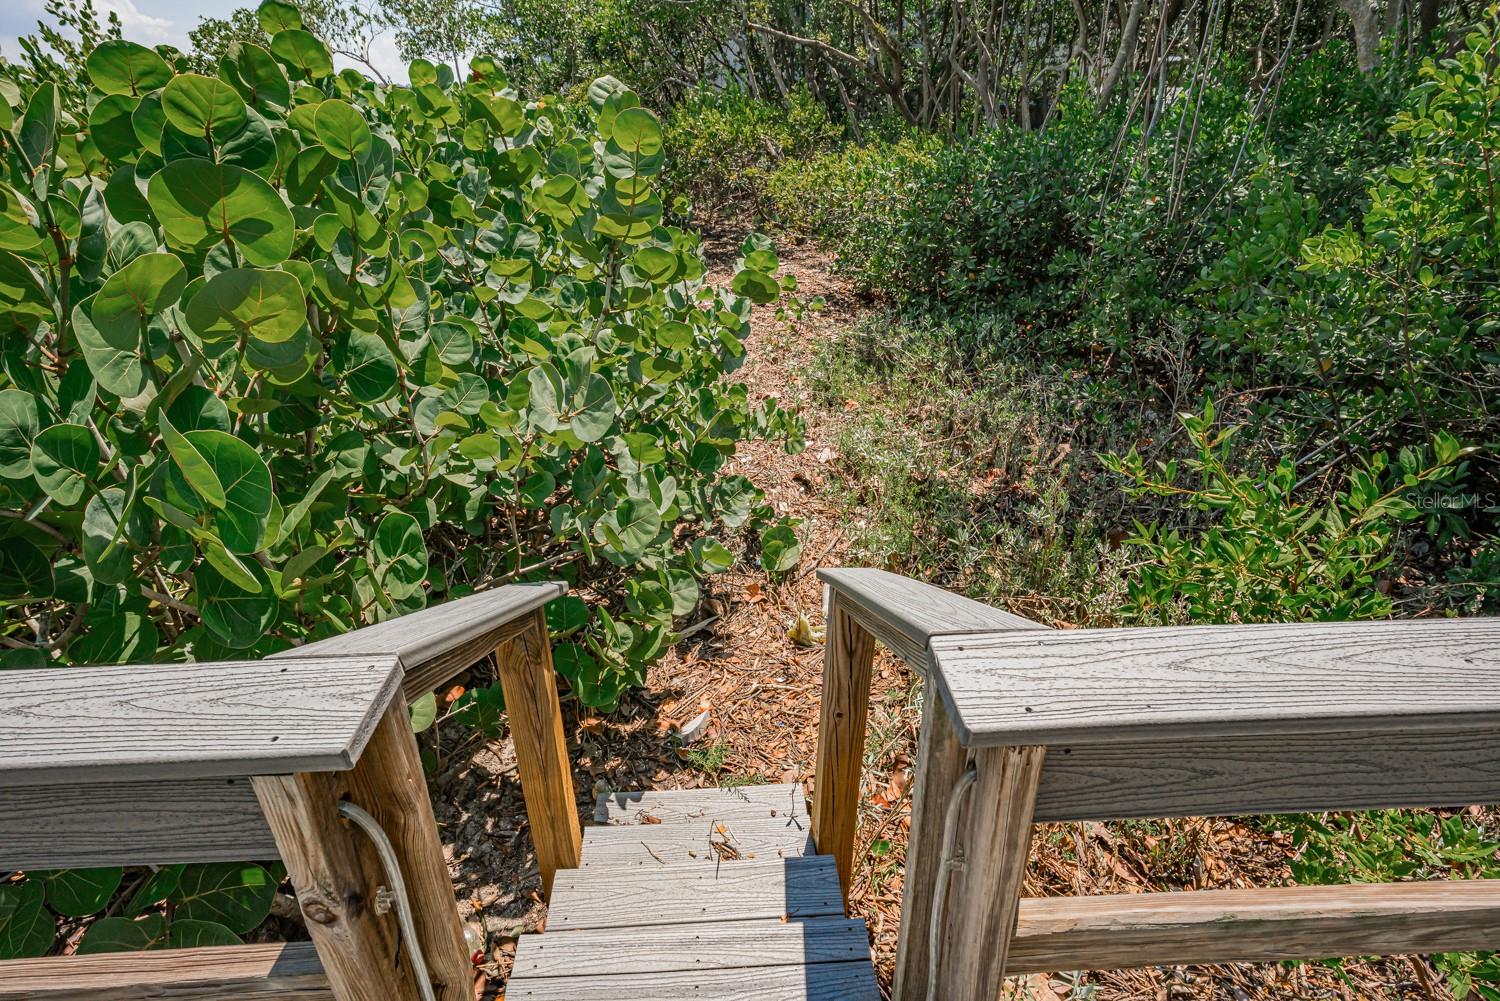 Dock steps near mangroves